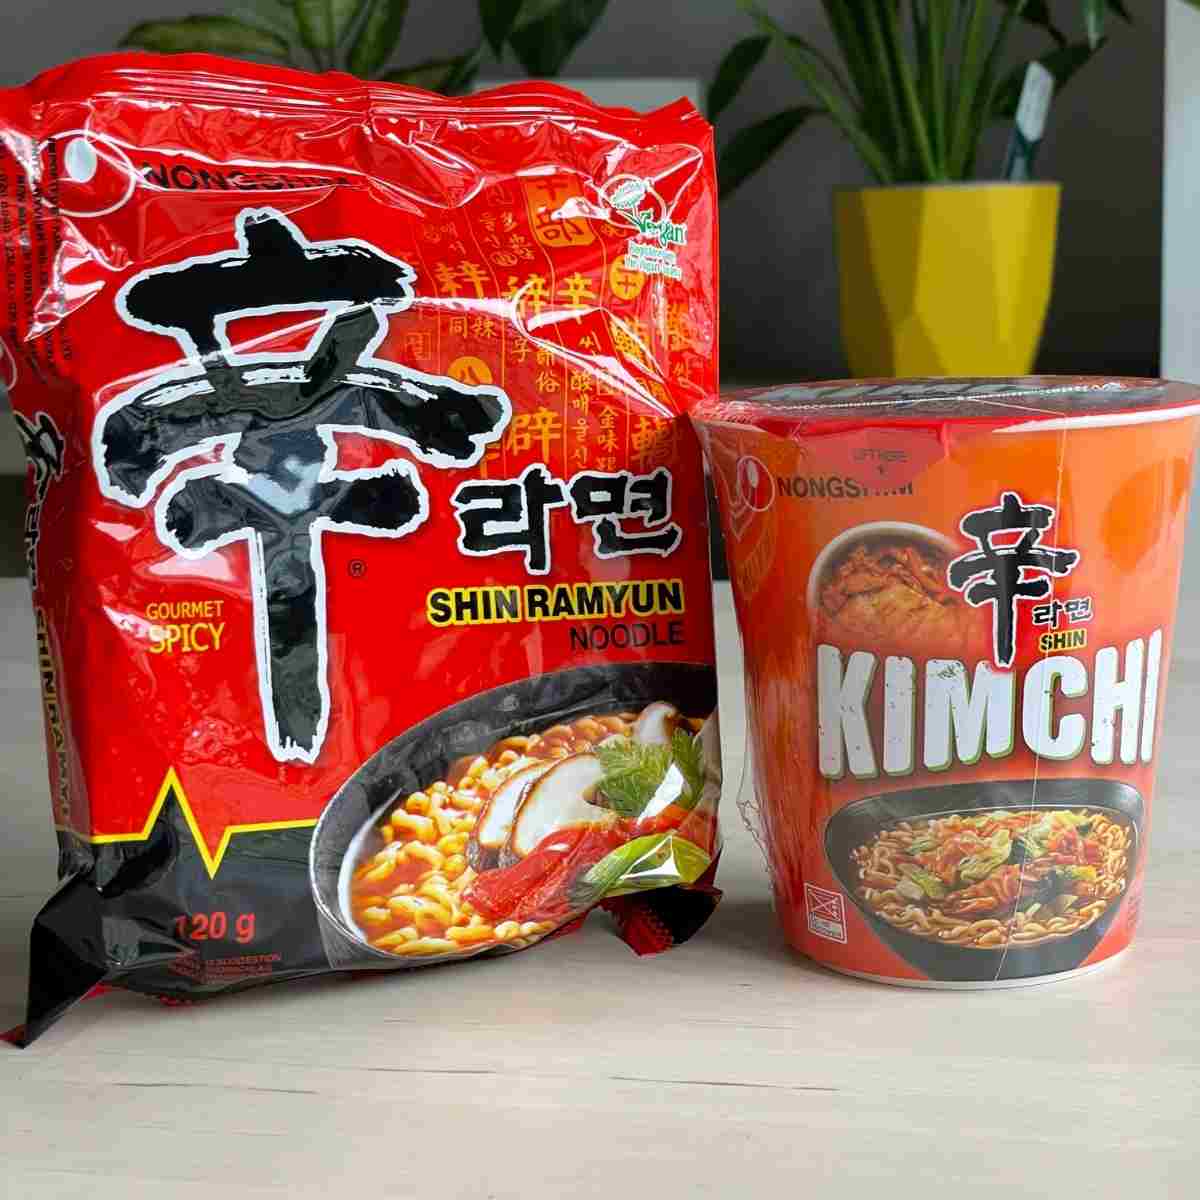 Shin ramyeon spicy and kimchi